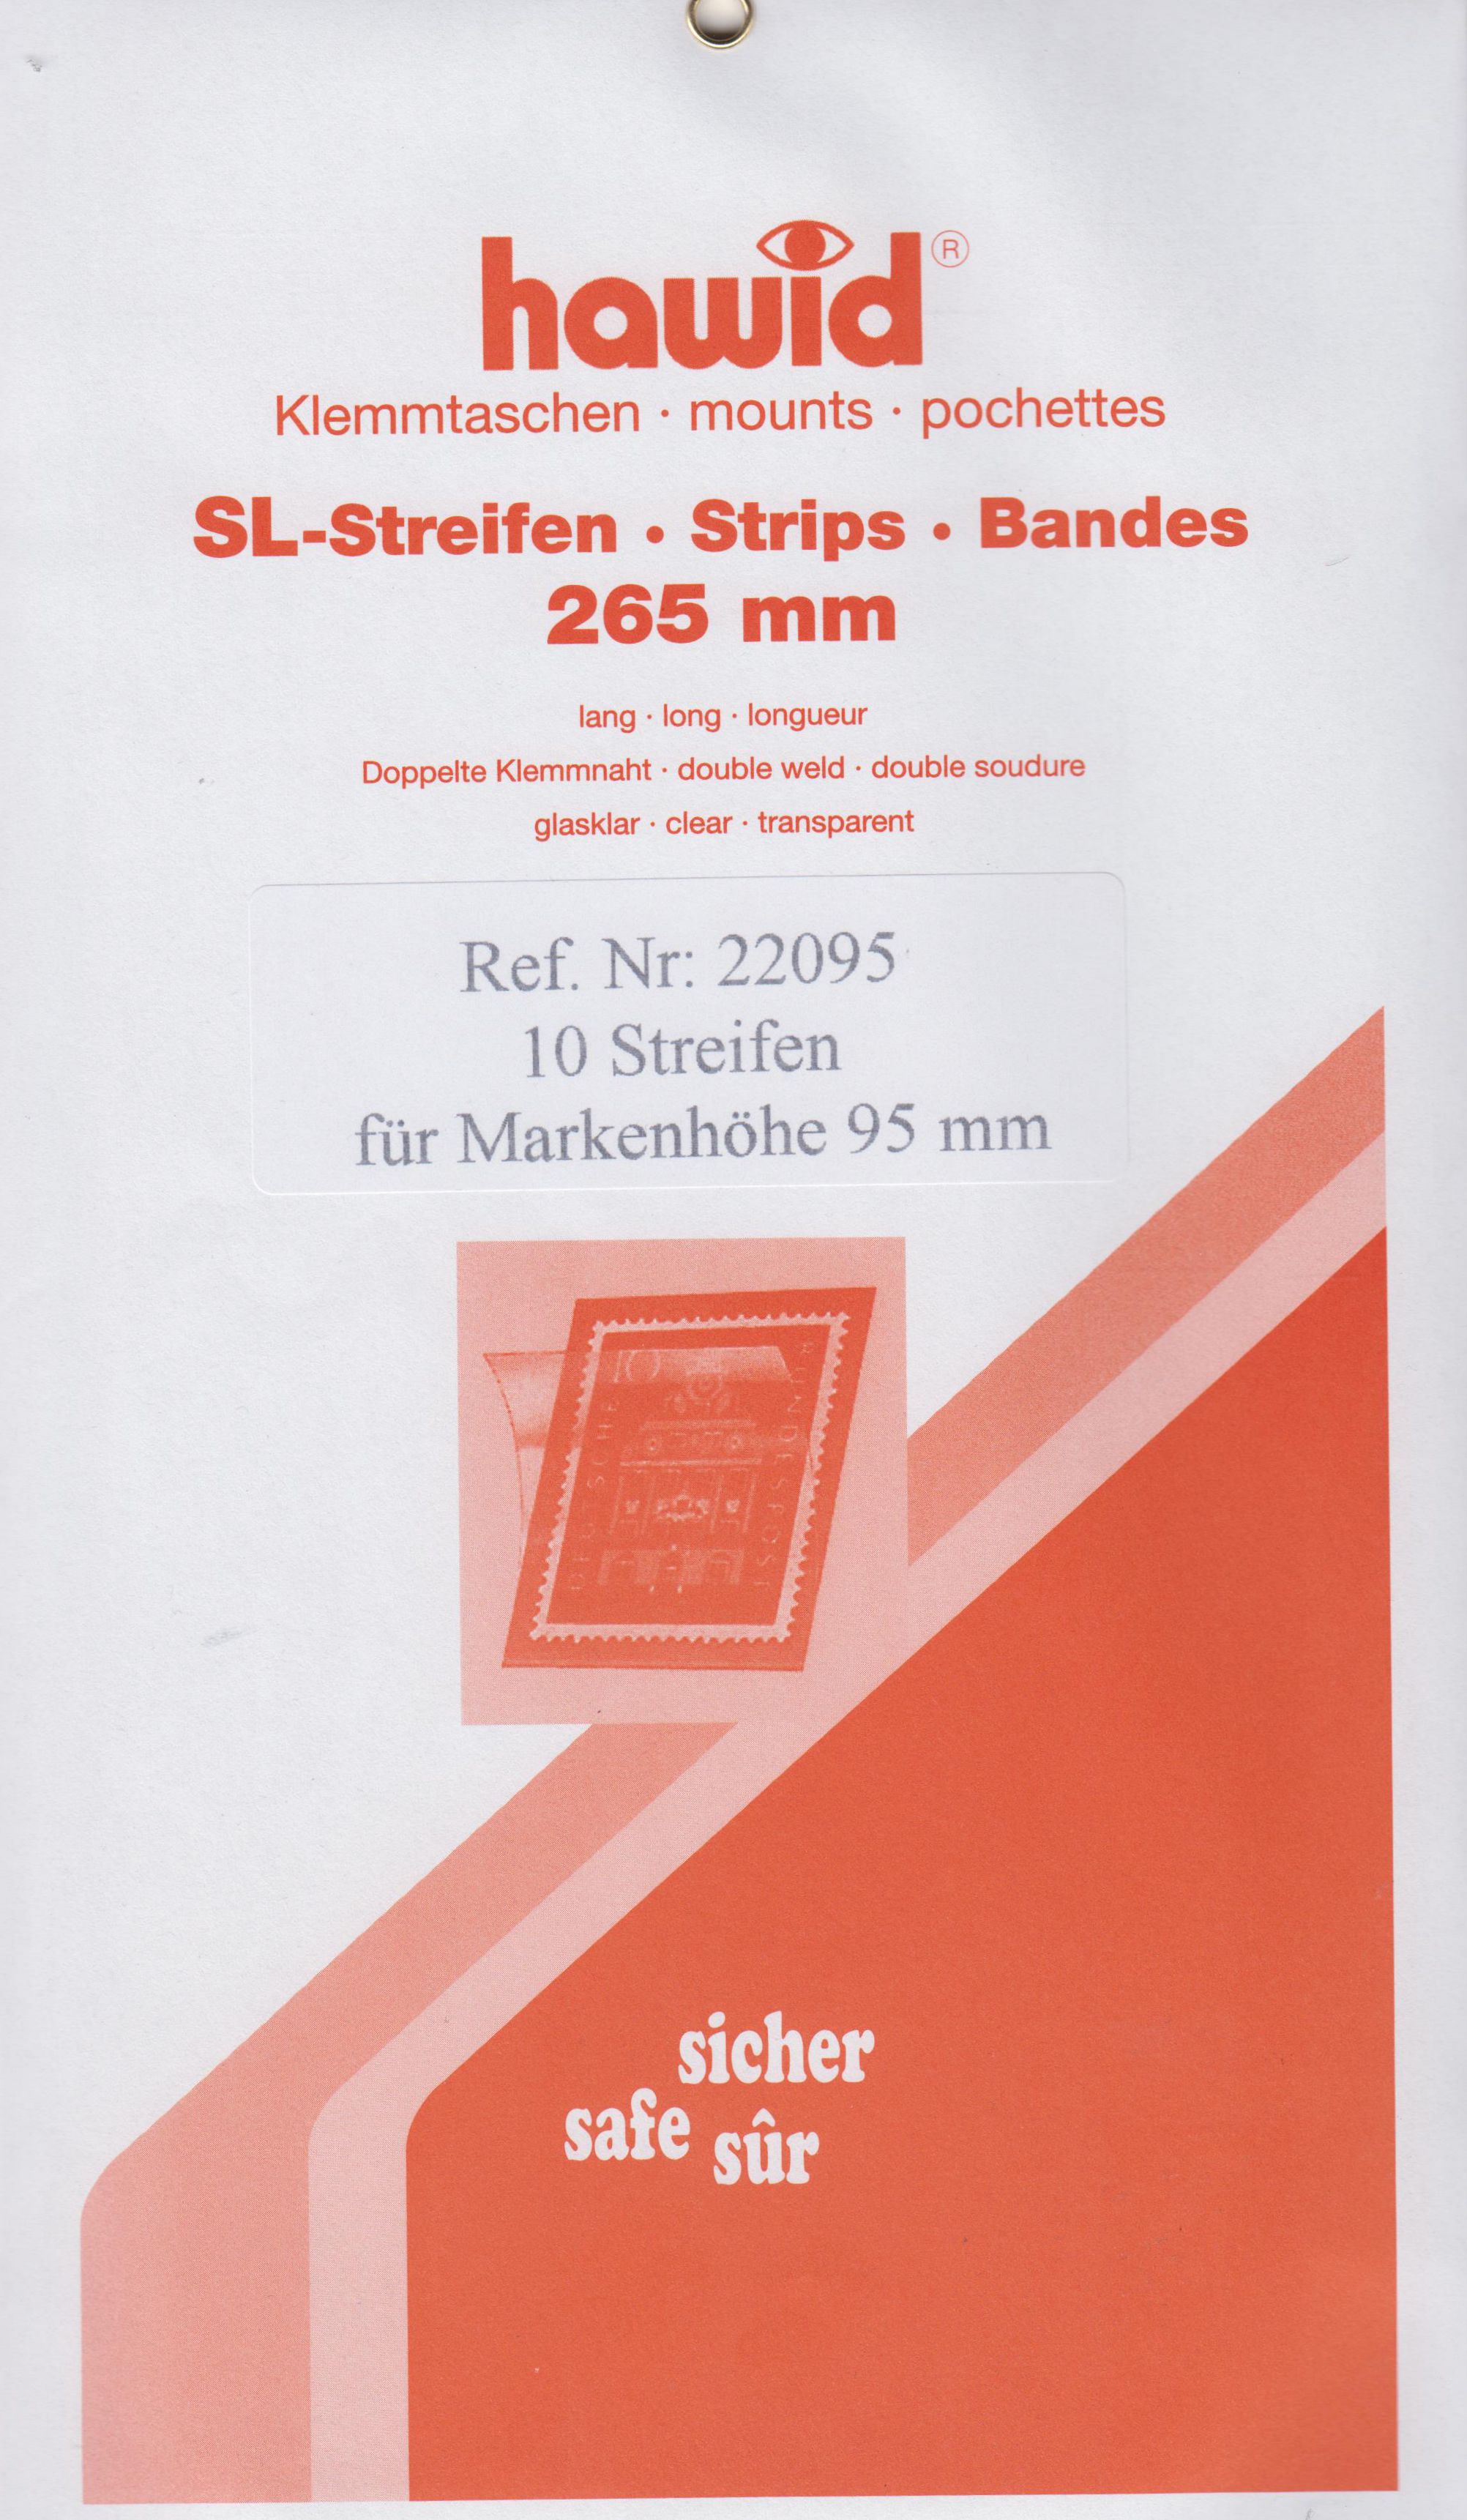 Hawid SL-Streifen Nr. 22095, 10 Streifen für Markenhöhe 95mm, glasklar